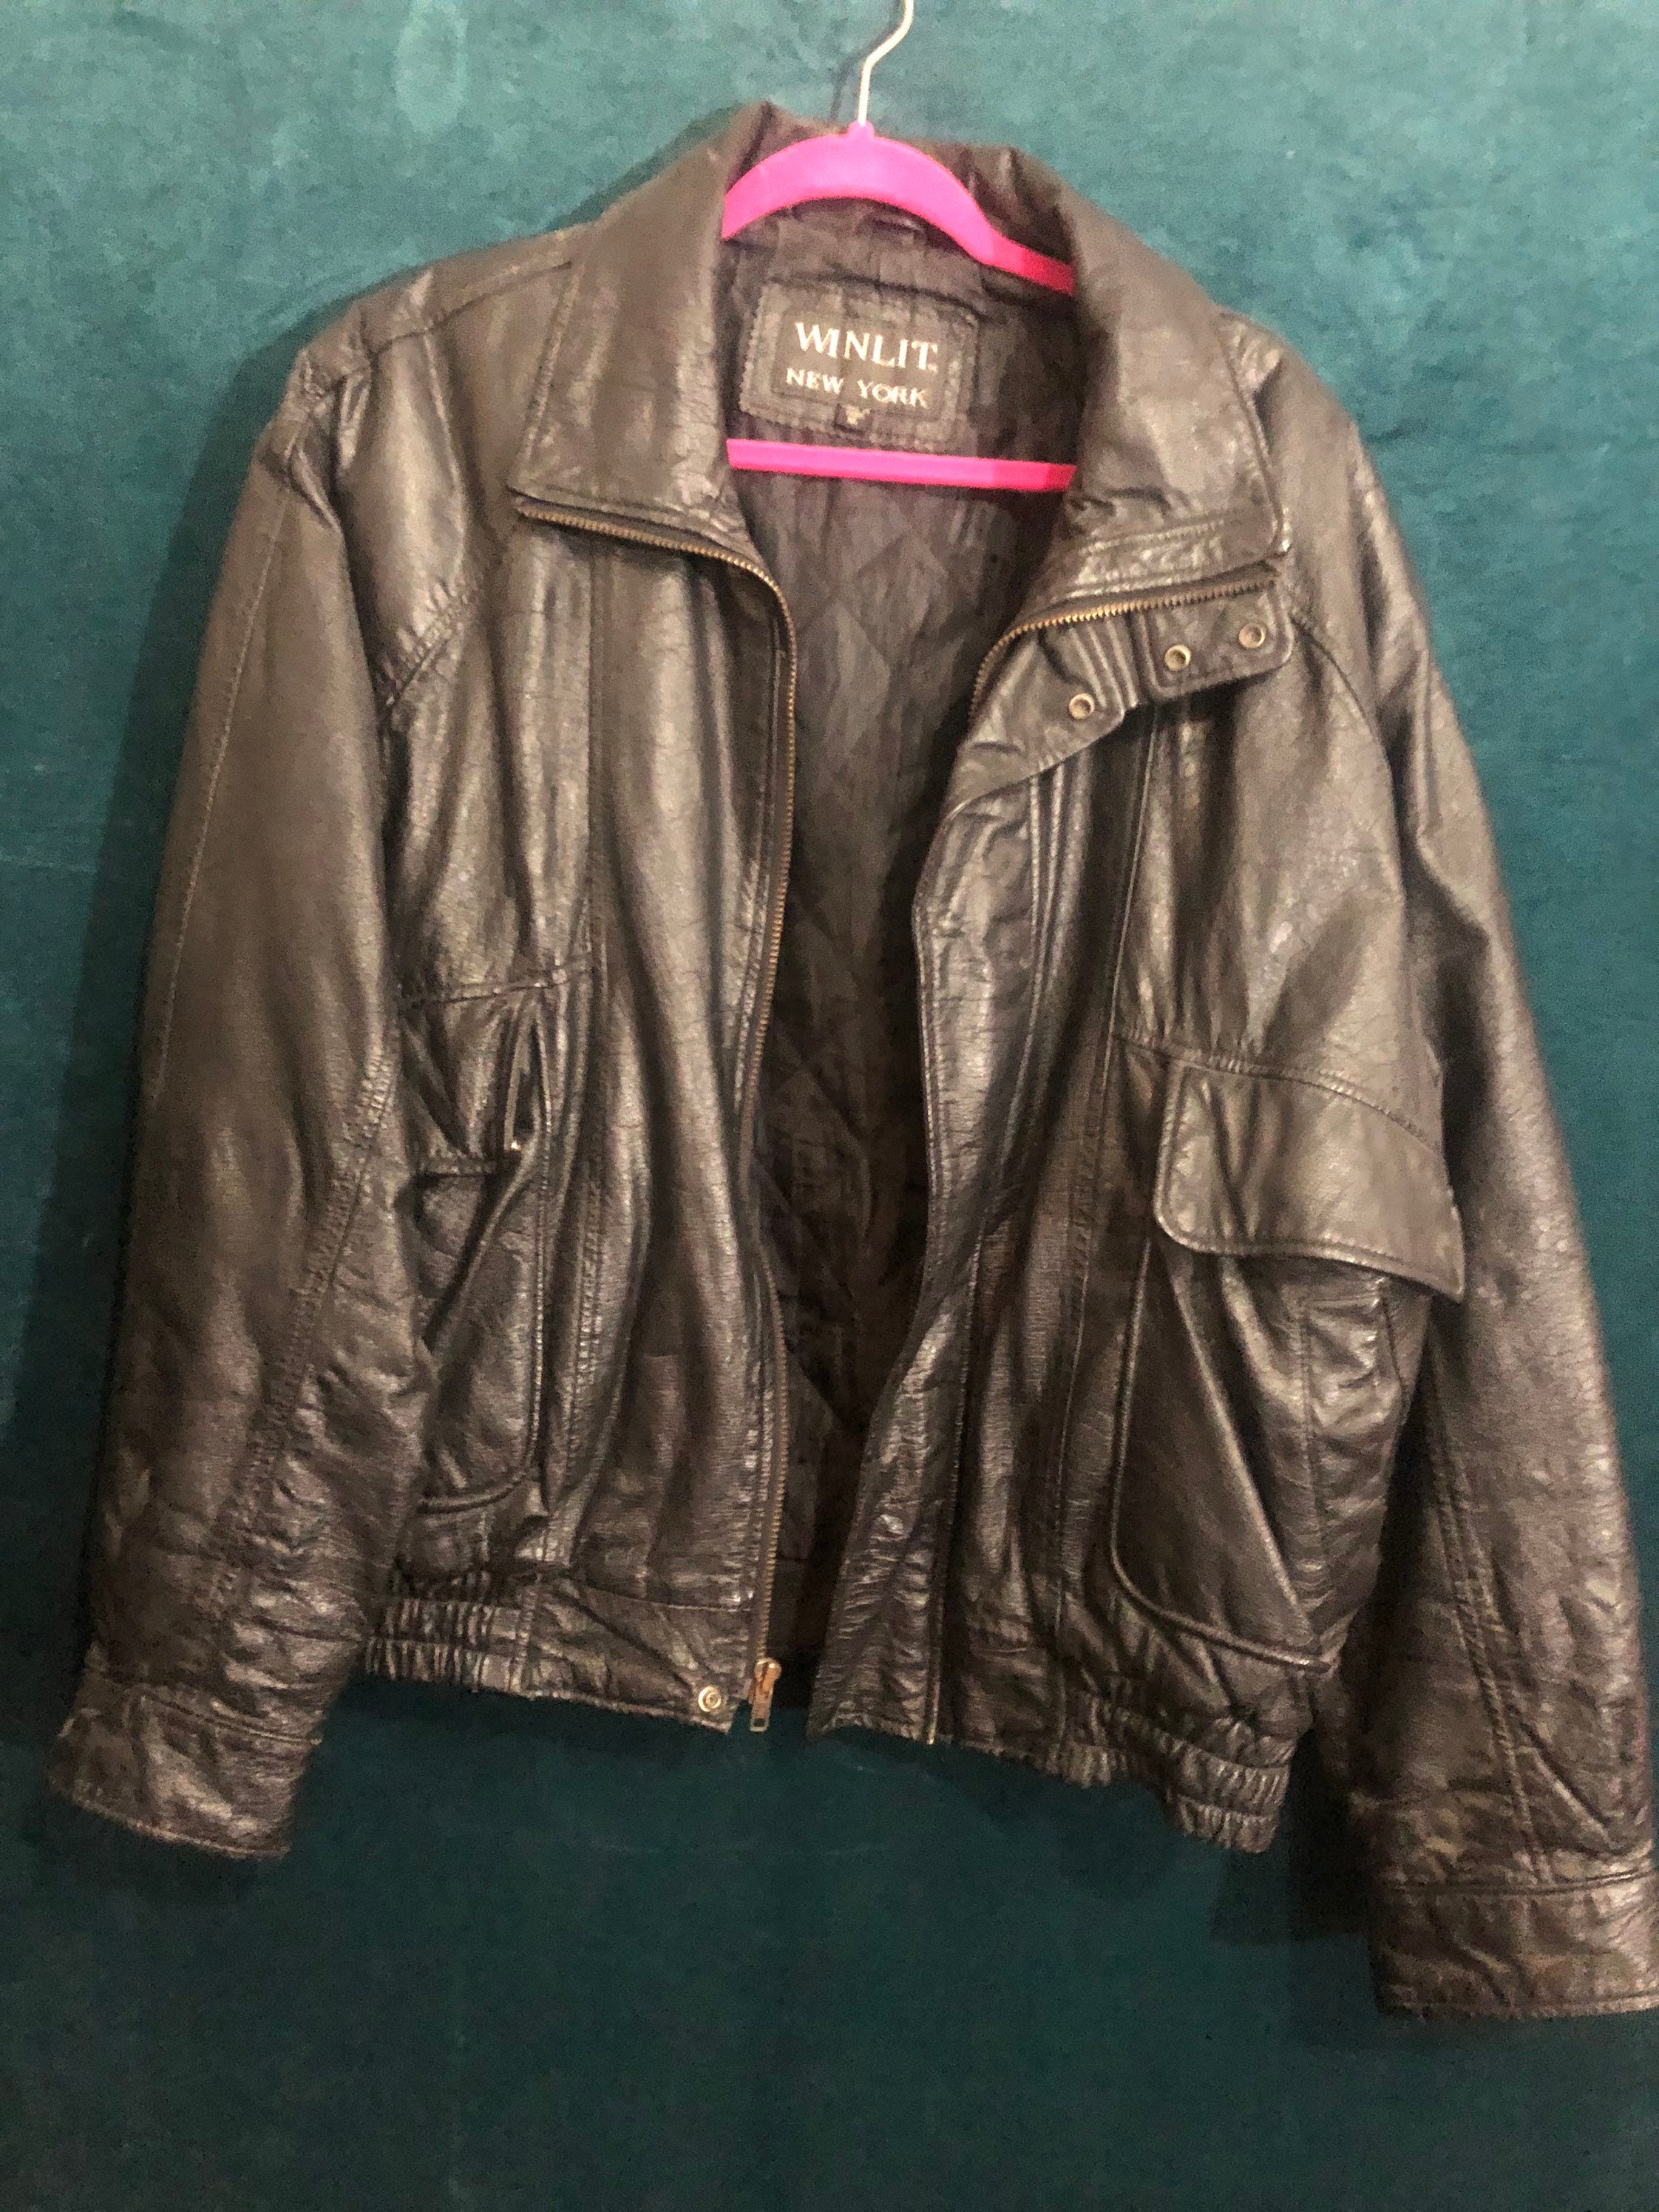 i found a vintage winlit pop art flower colorful leather jacket for $200  should i purchase? : r/VintageFashion